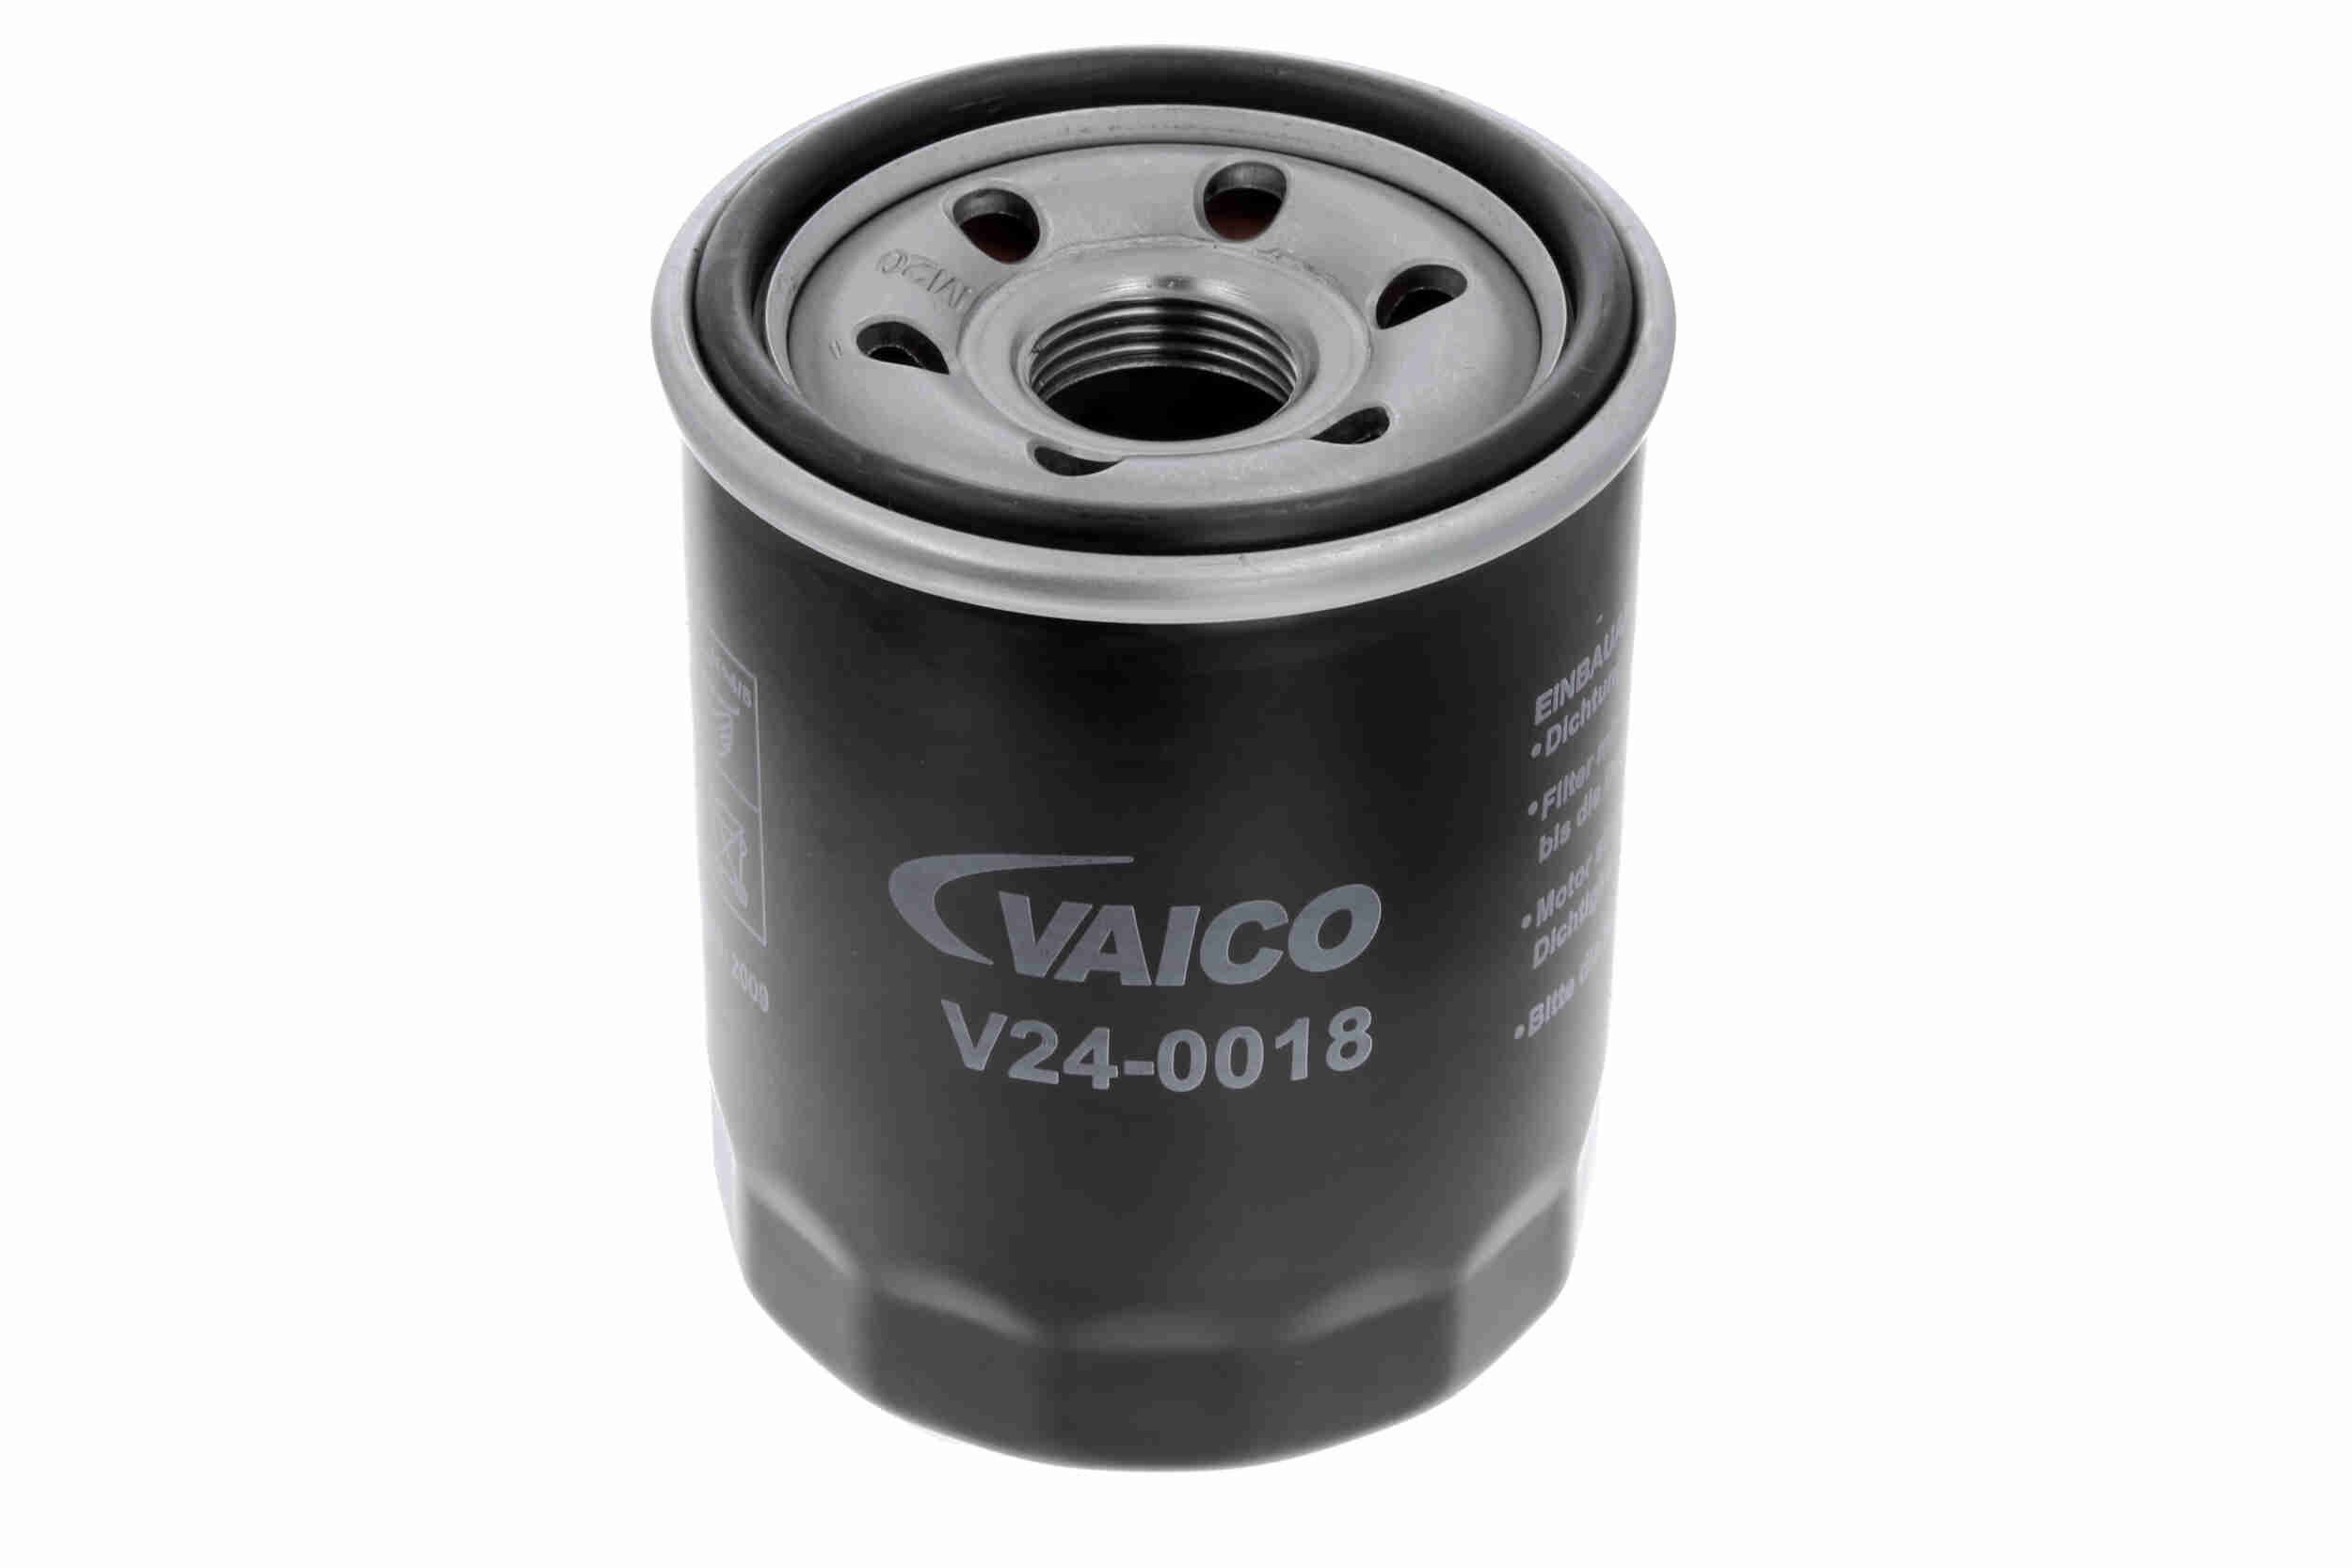 VAICO V24-0018 Ölfilter Ø: 66mm, Ø: 67mm, Innendurchmesser 2: 54mm, Innendurchmesser 2: 62mm, Höhe: 90mm